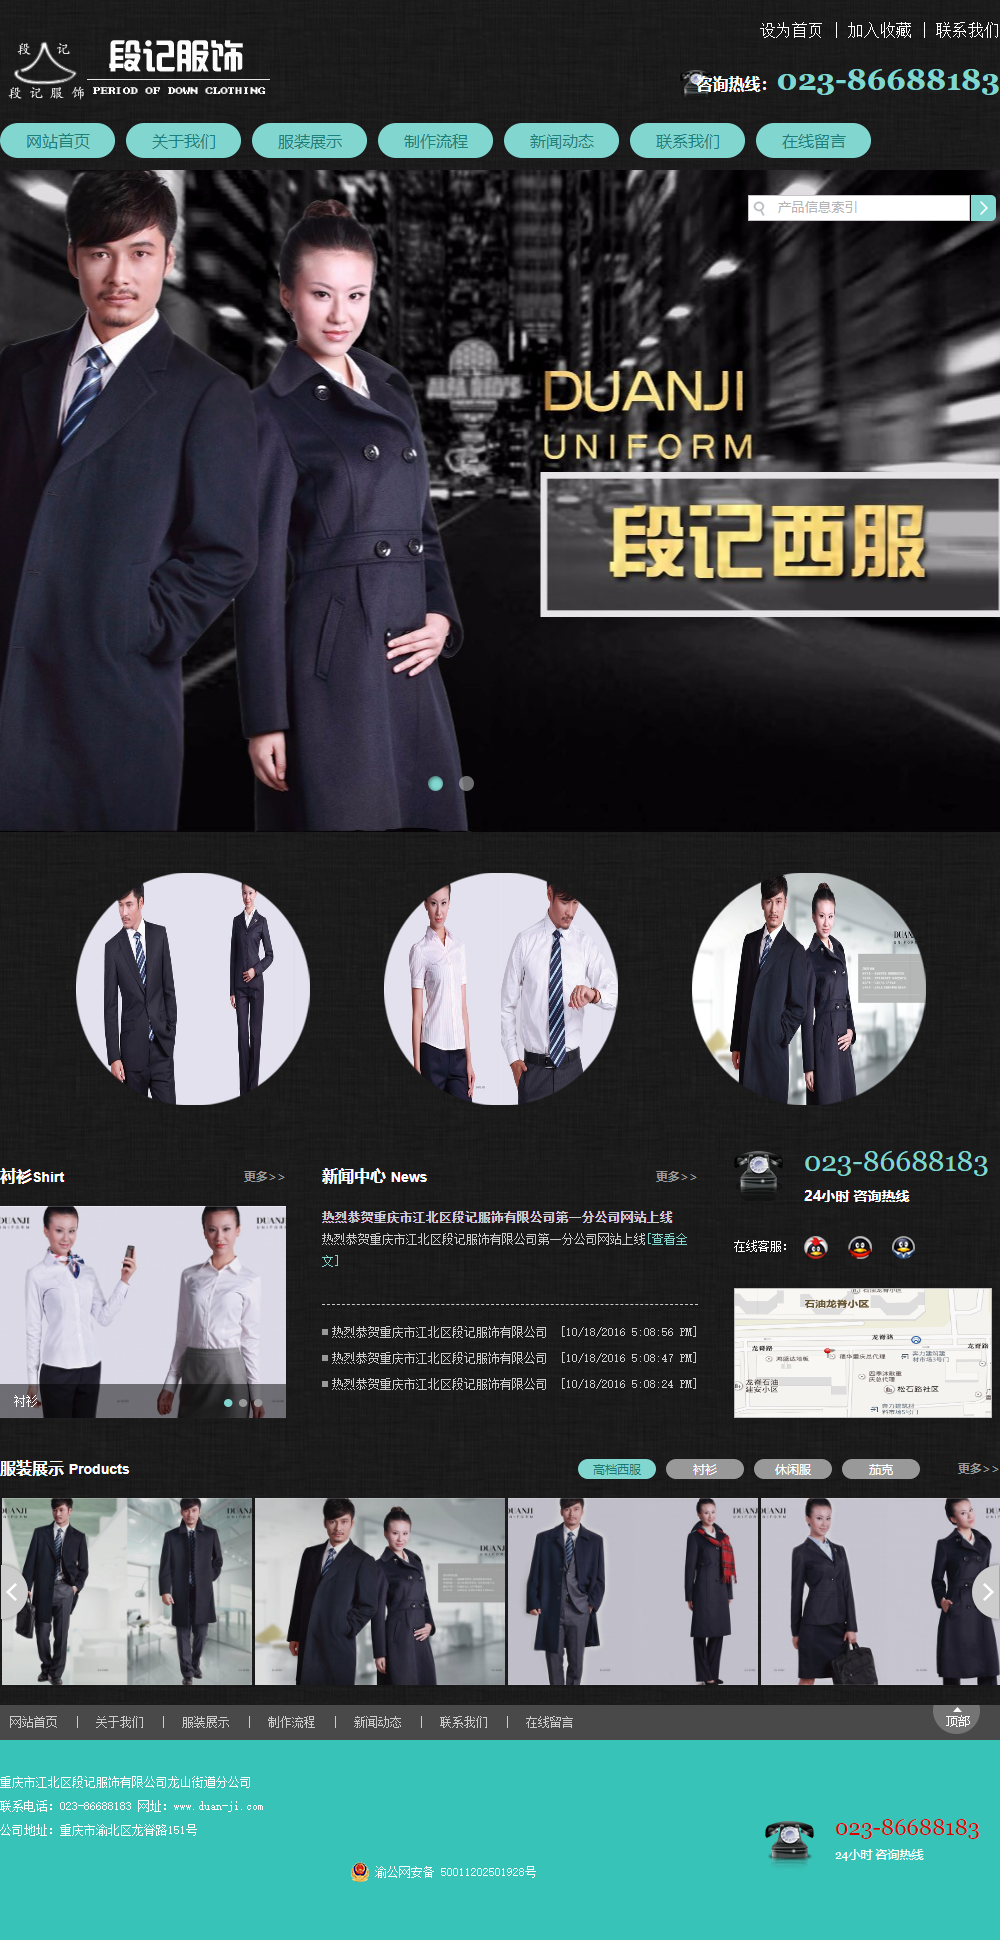 重庆市江北区段记服饰有限公司龙山街道分公司网站案例